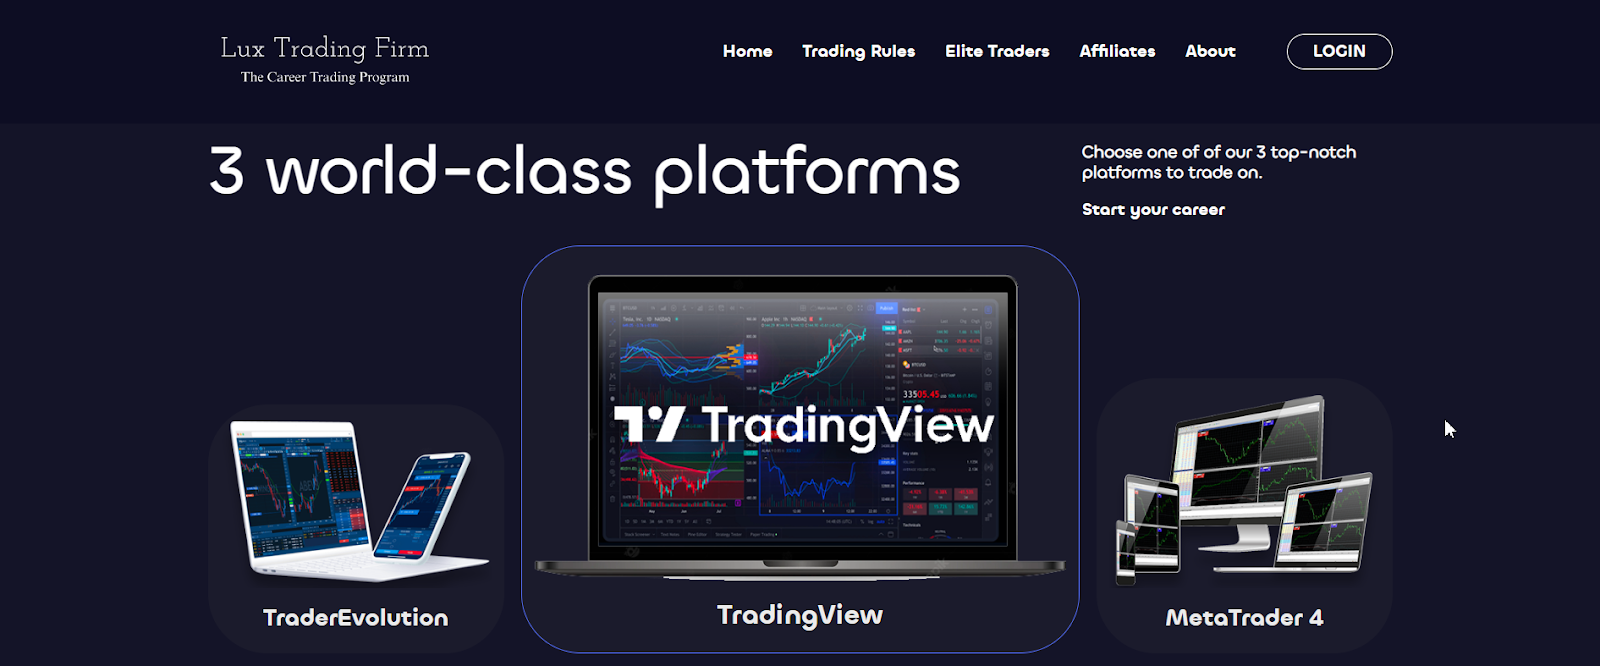 Revue de Lux Trading Firm - Sélectionner une plateforme de trading